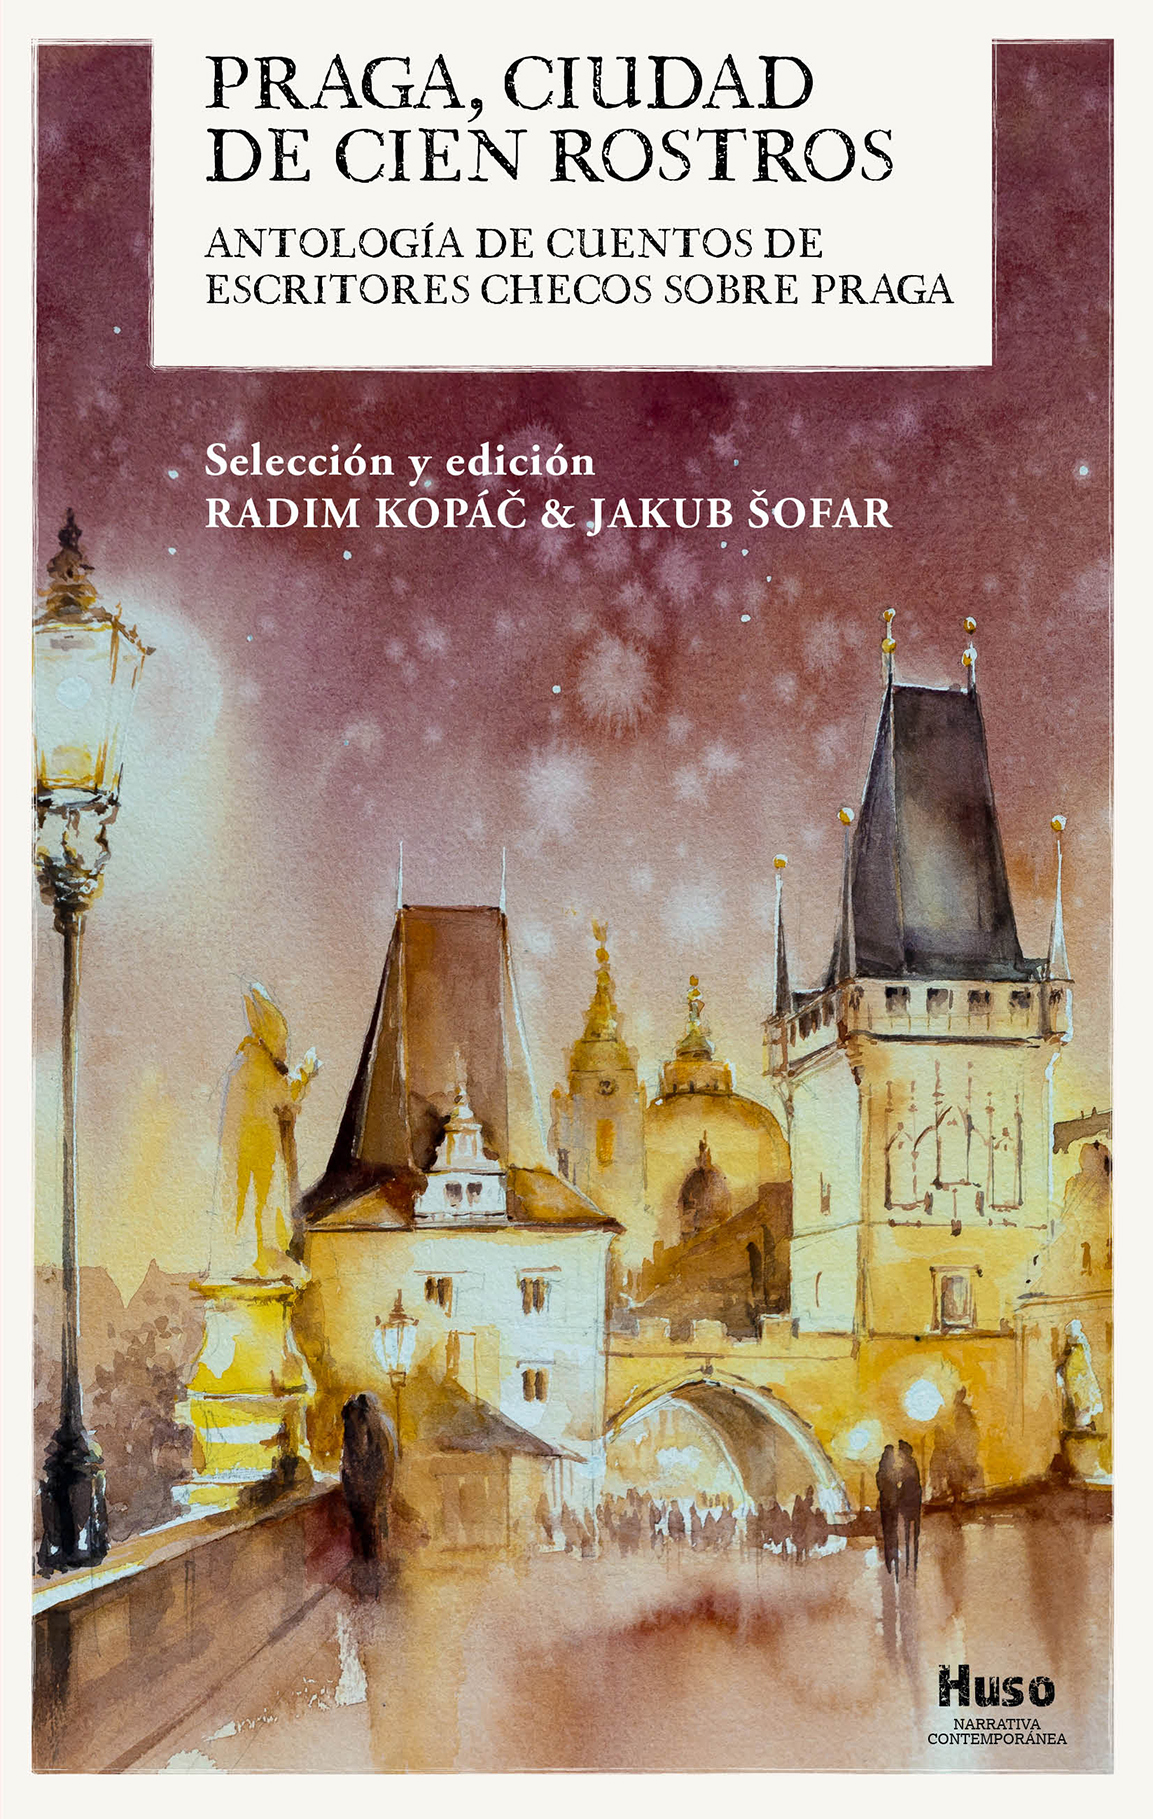 Huso Editorial publica una antología de cuentos sobre Praga 